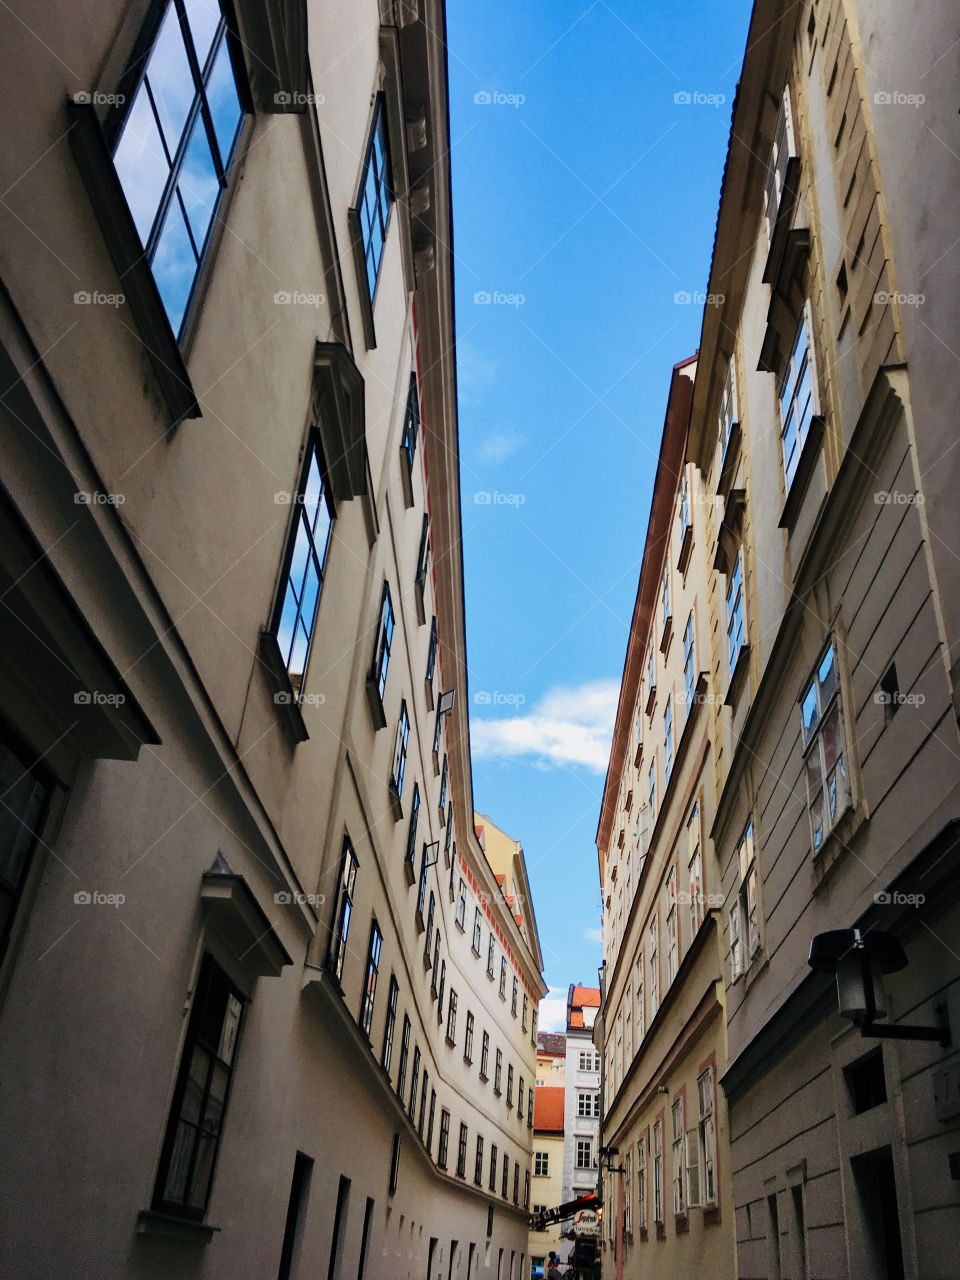 Streets of Vienna 